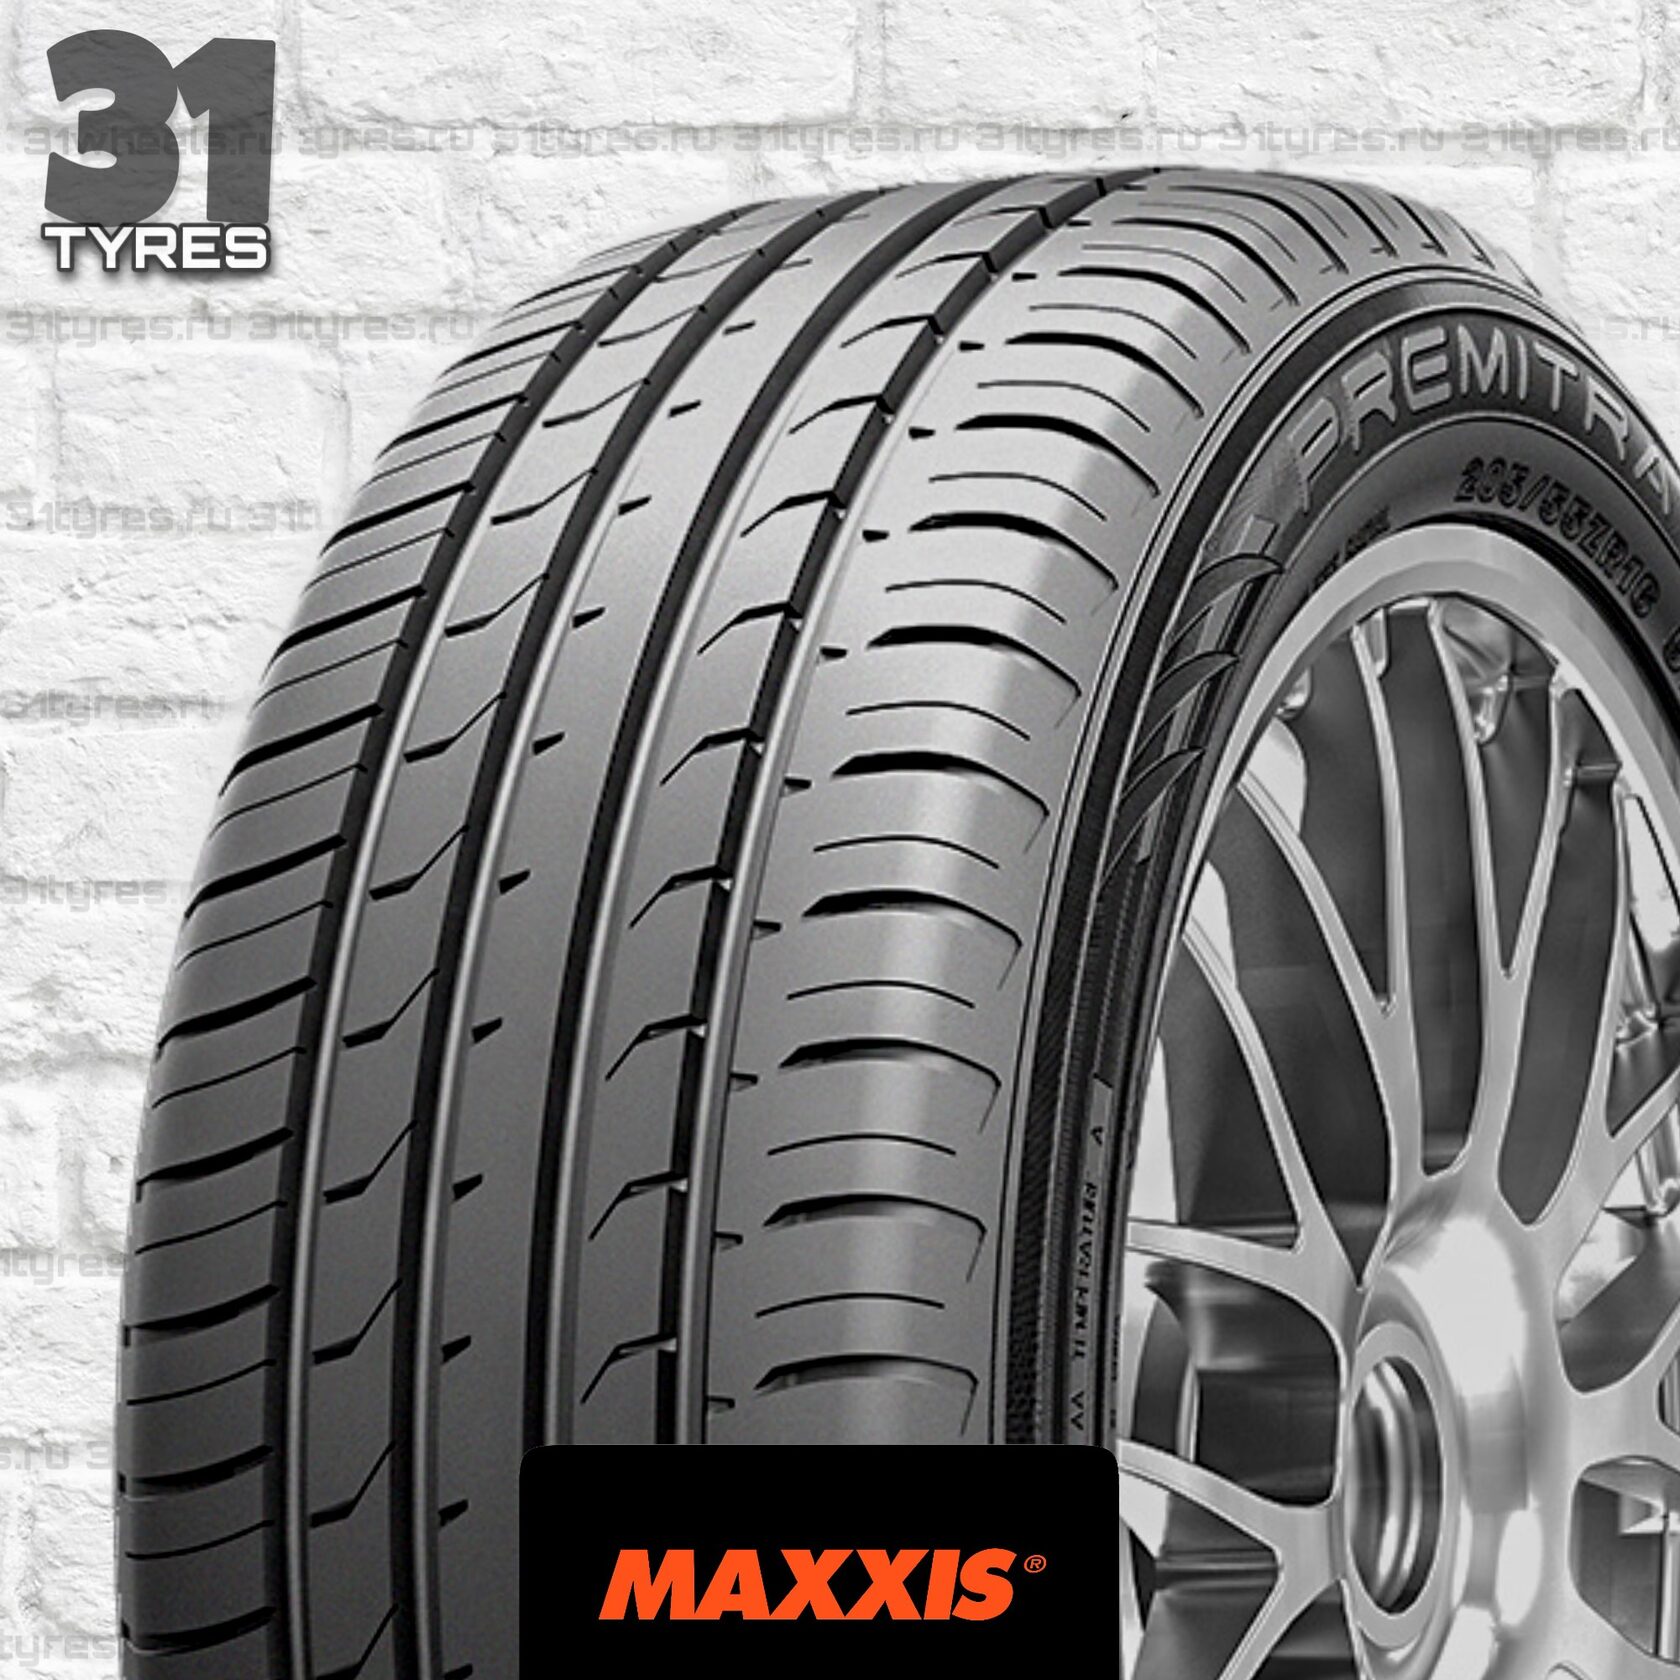 Maxxis premitra hp5 225 60 r17. Maxxis hp5. Maxxis Premitra hp5 235/45 r18 98w. Maxxis Premitra hp5 245/50 r18. Maxxis Premitra hp5.